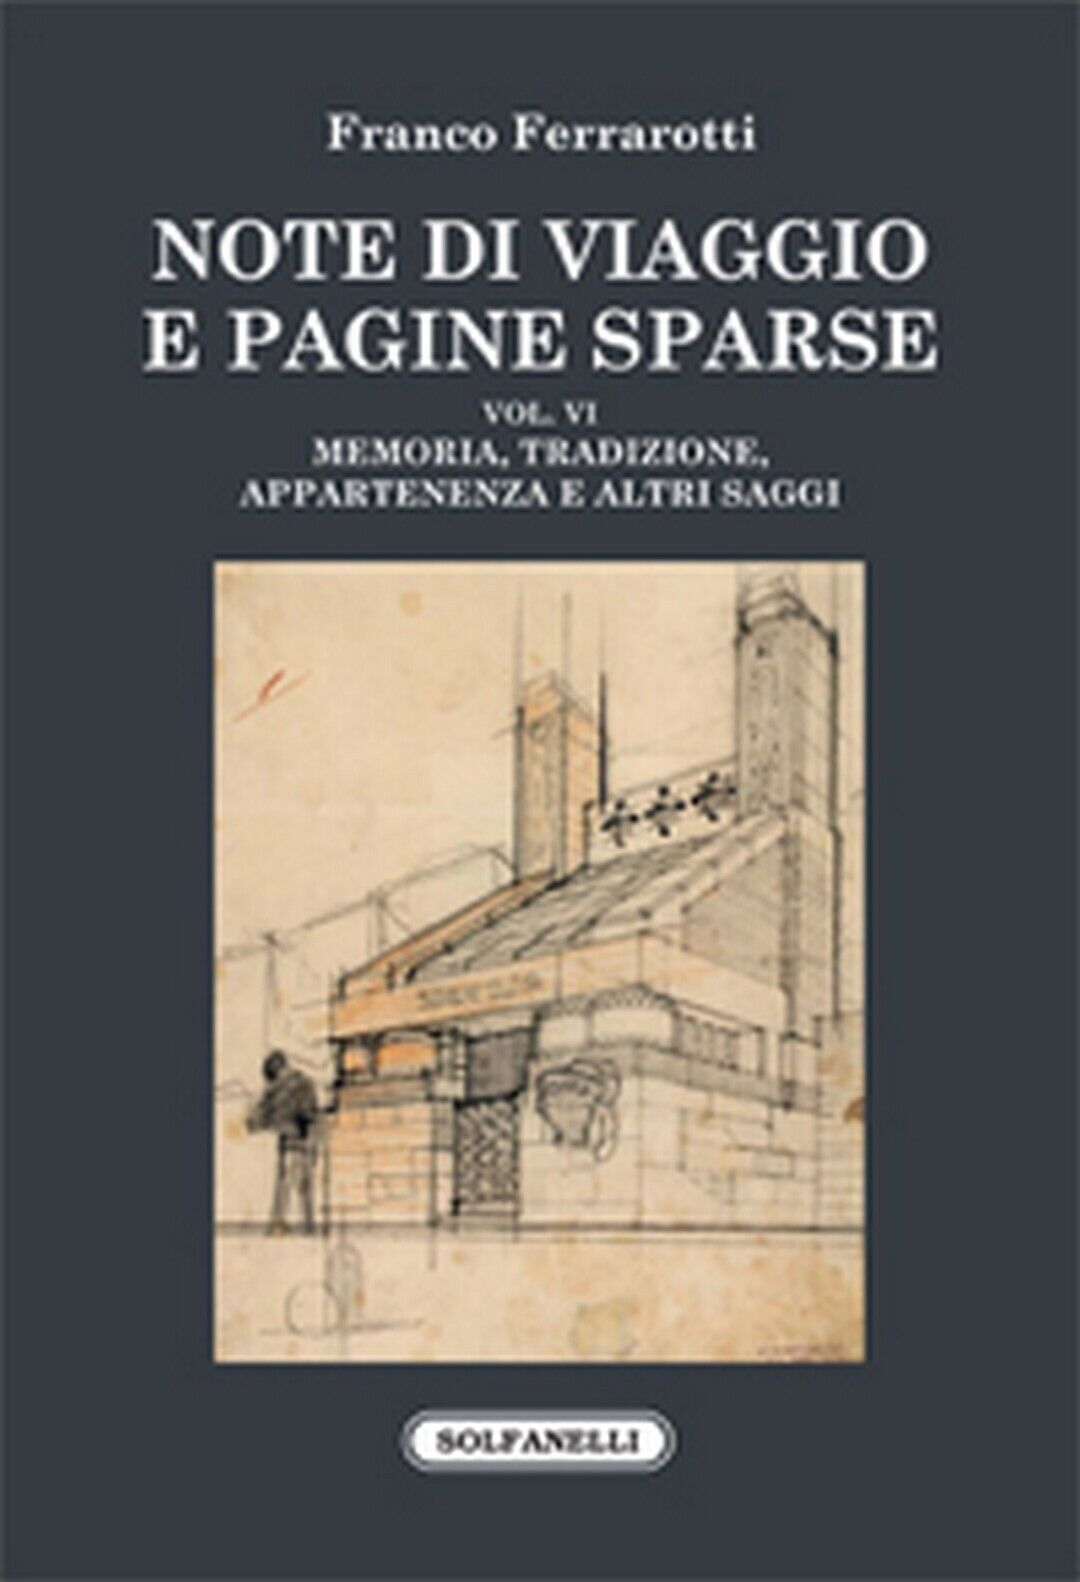 NOTE DI VIAGGIO E PAGINE SPARSE Vol. VI  di Franco Ferrarotti,  Solfanelli Ediz. libro usato